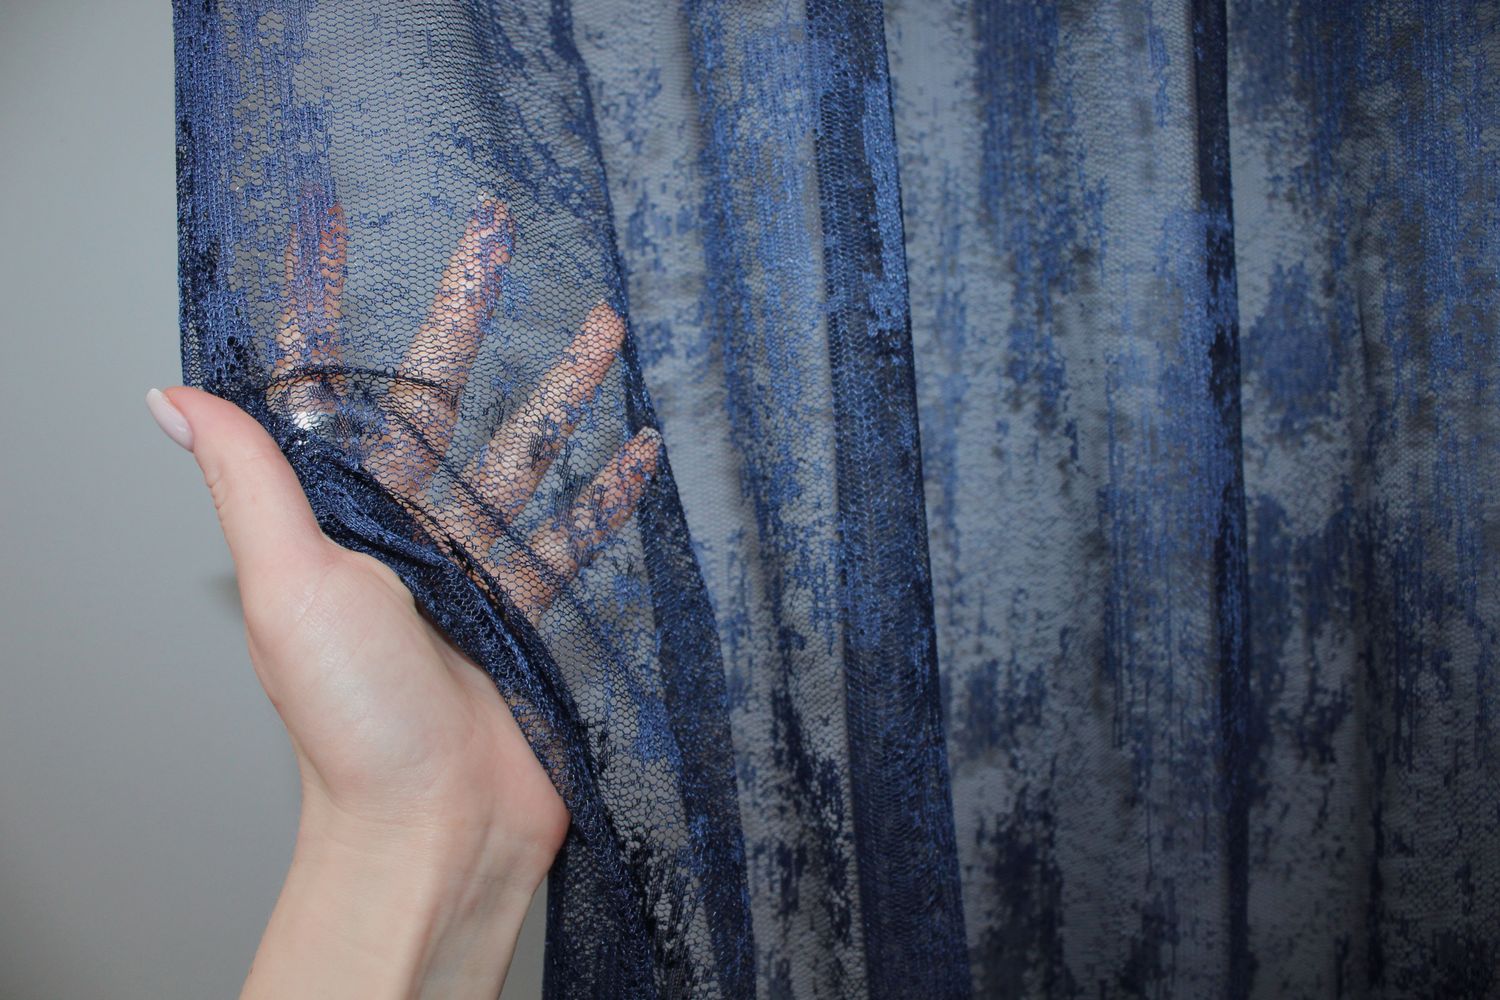 Тюль жаккард, коллекция "Мрамор" цвет темно-синий 1405т, Тюль на метраж, Нужную Вам ширину указывайте при покупке. (Ширина набирается по длине рулона.), 2,8 м.